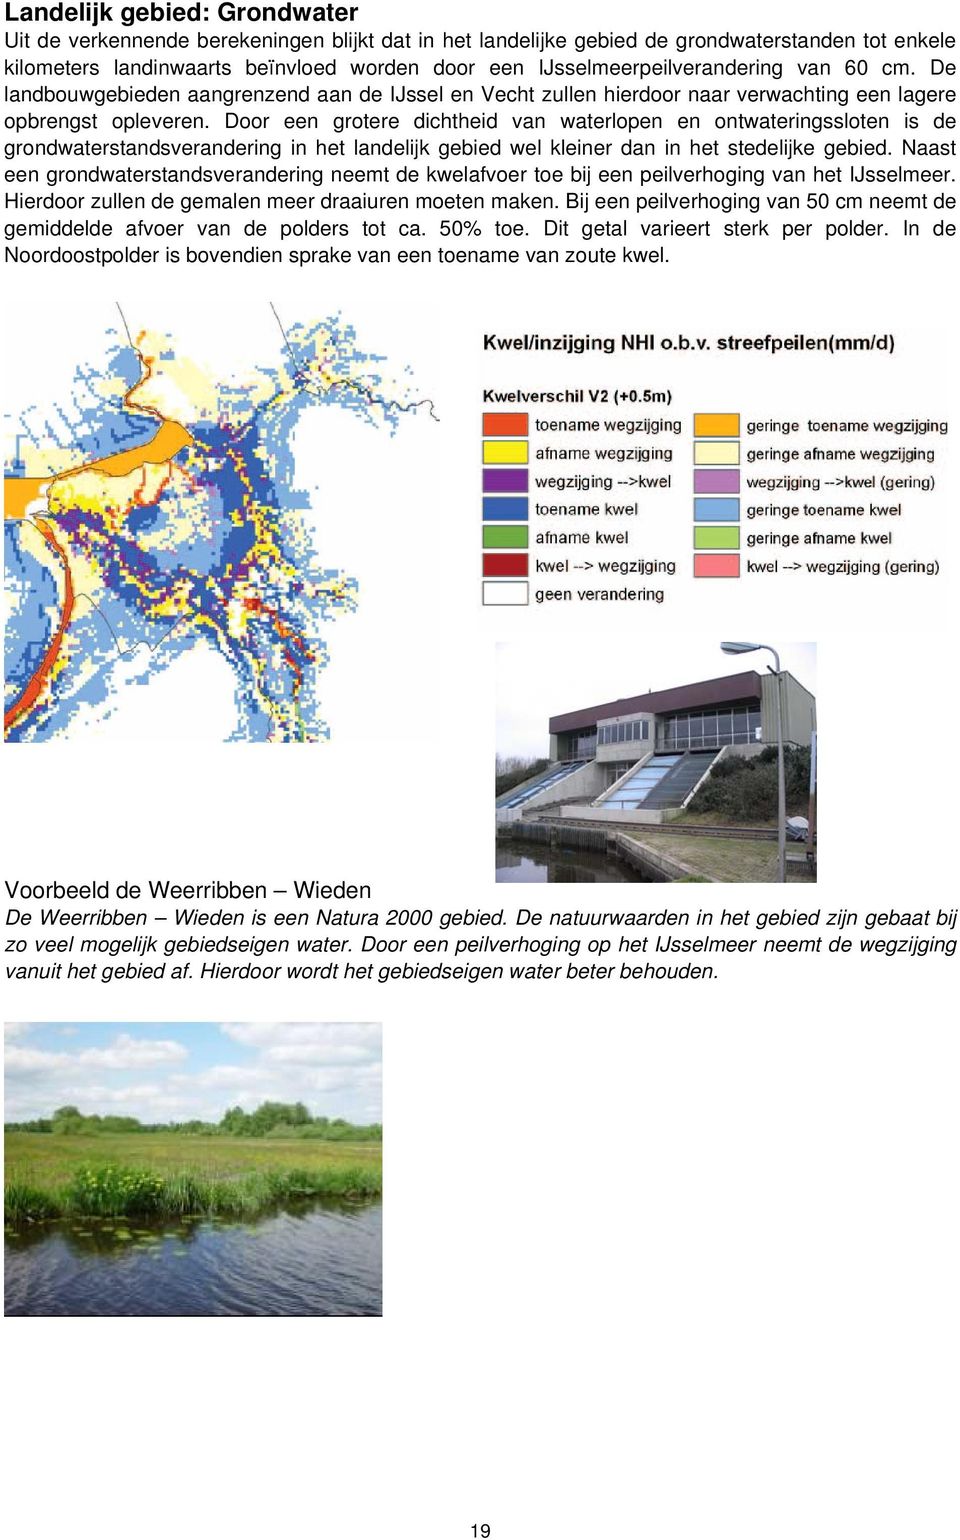 Door een grotere dichtheid van waterlopen en ontwateringssloten is de grondwaterstandsverandering in het landelijk gebied wel kleiner dan in het stedelijke gebied.